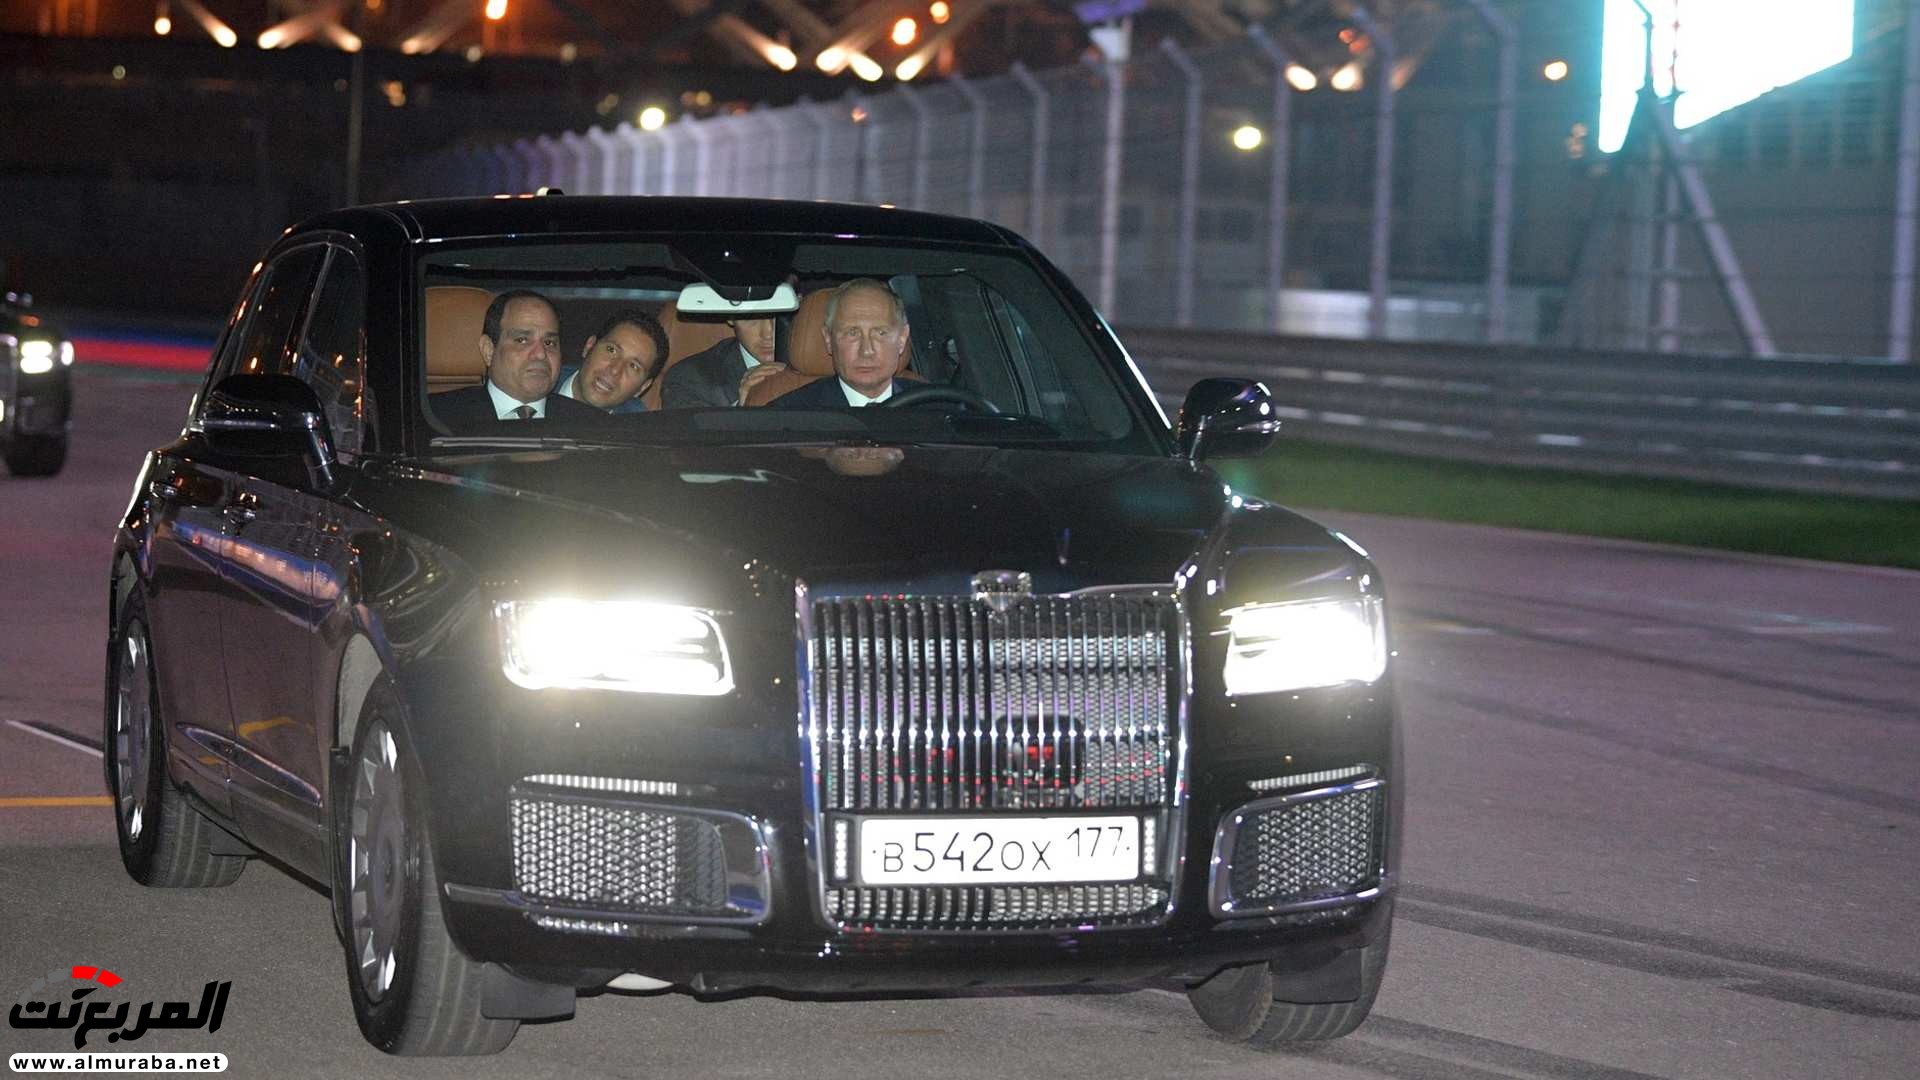 "بالصور" بوتين يصطحب السيسي في جولة داخل ليموزين يقودها بنفسه 25